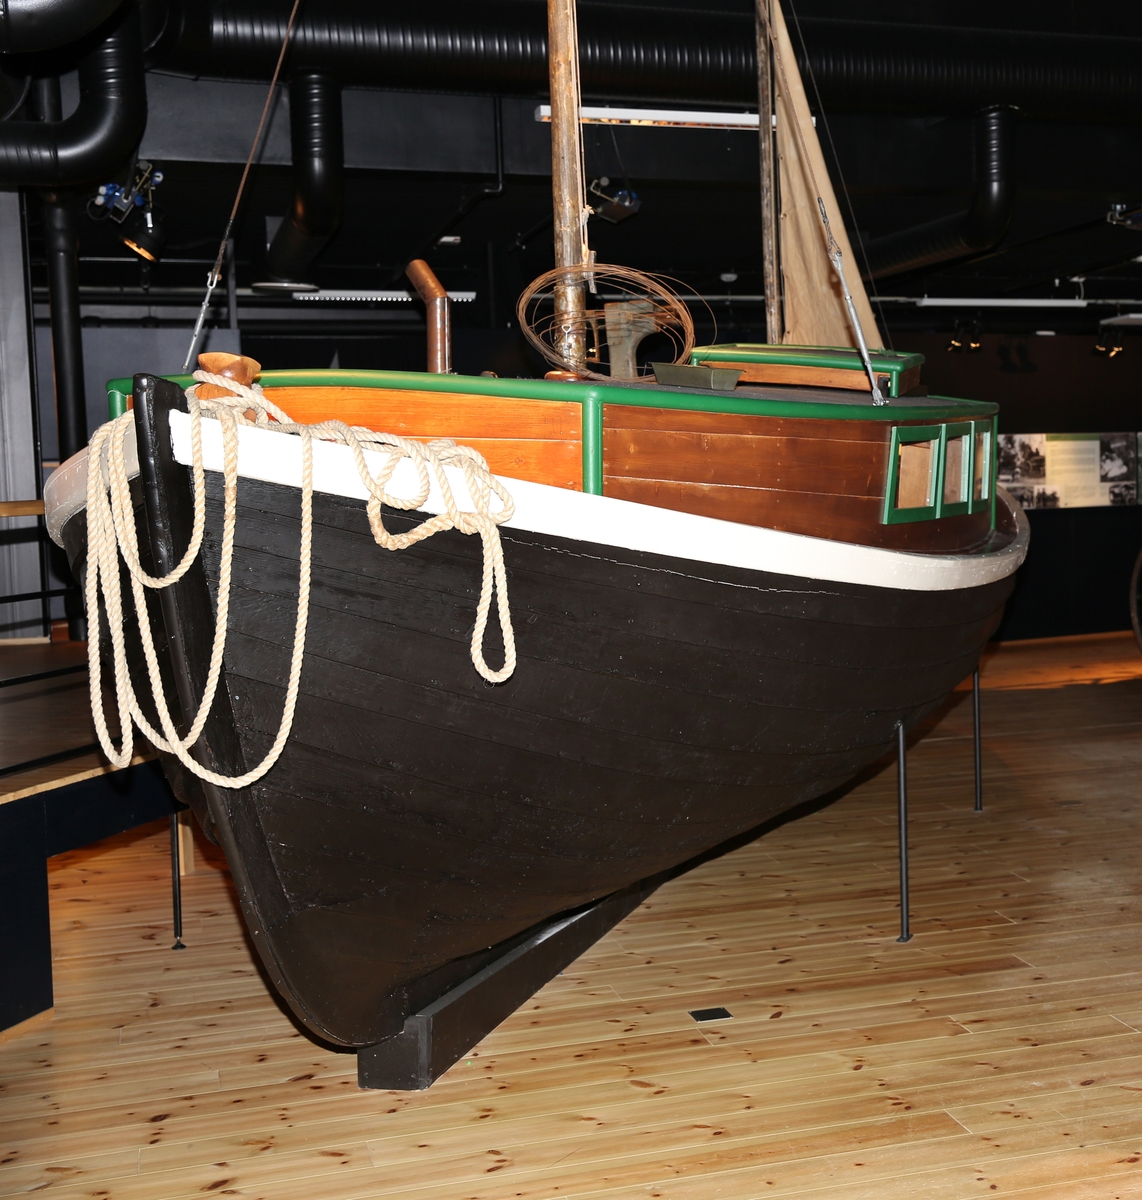 Båt brukt av båtreisende romanifolk/tatere, langs kysten av Norge. Overbygd "oppholdsrom". Utstyr til metallarbeid (takrenner) påmontert utvendig. Inngår i utstillingen "Latjo drom".